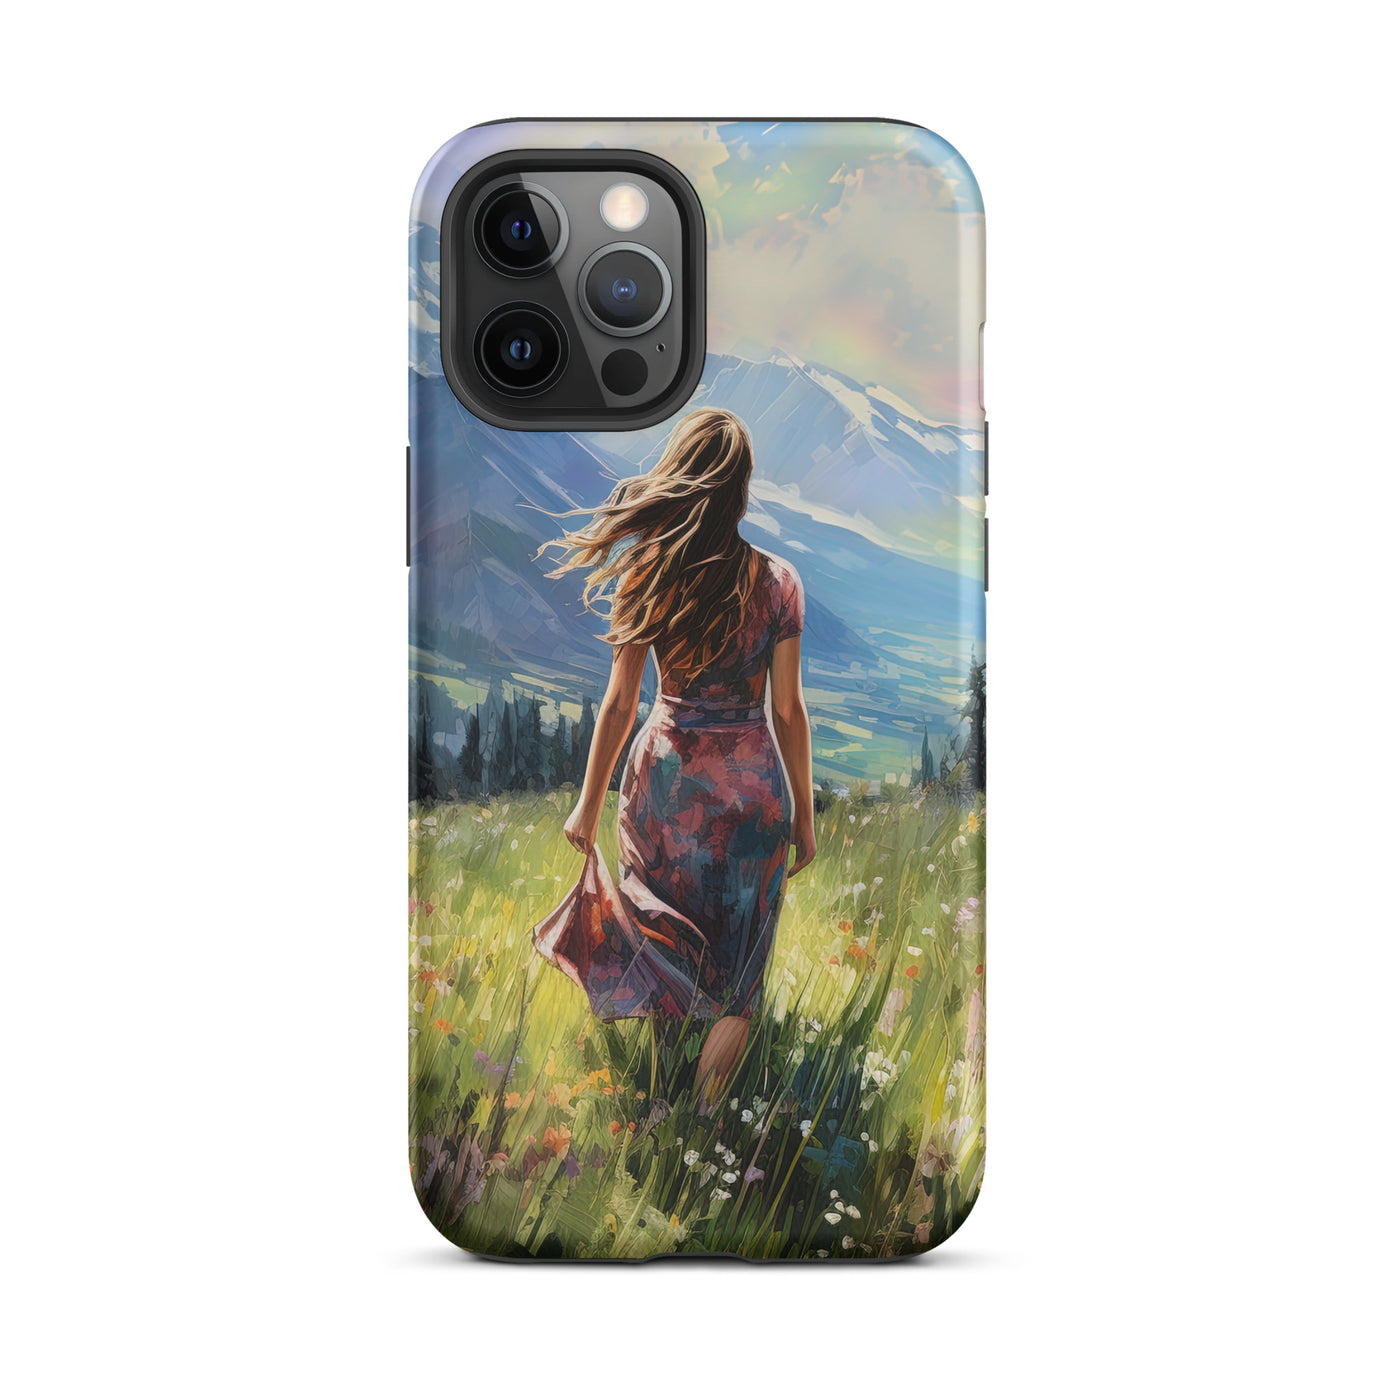 Frau mit langen Kleid im Feld mit Blumen - Berge im Hintergrund - Malerei - iPhone Schutzhülle (robust) berge xxx iPhone 12 Pro Max